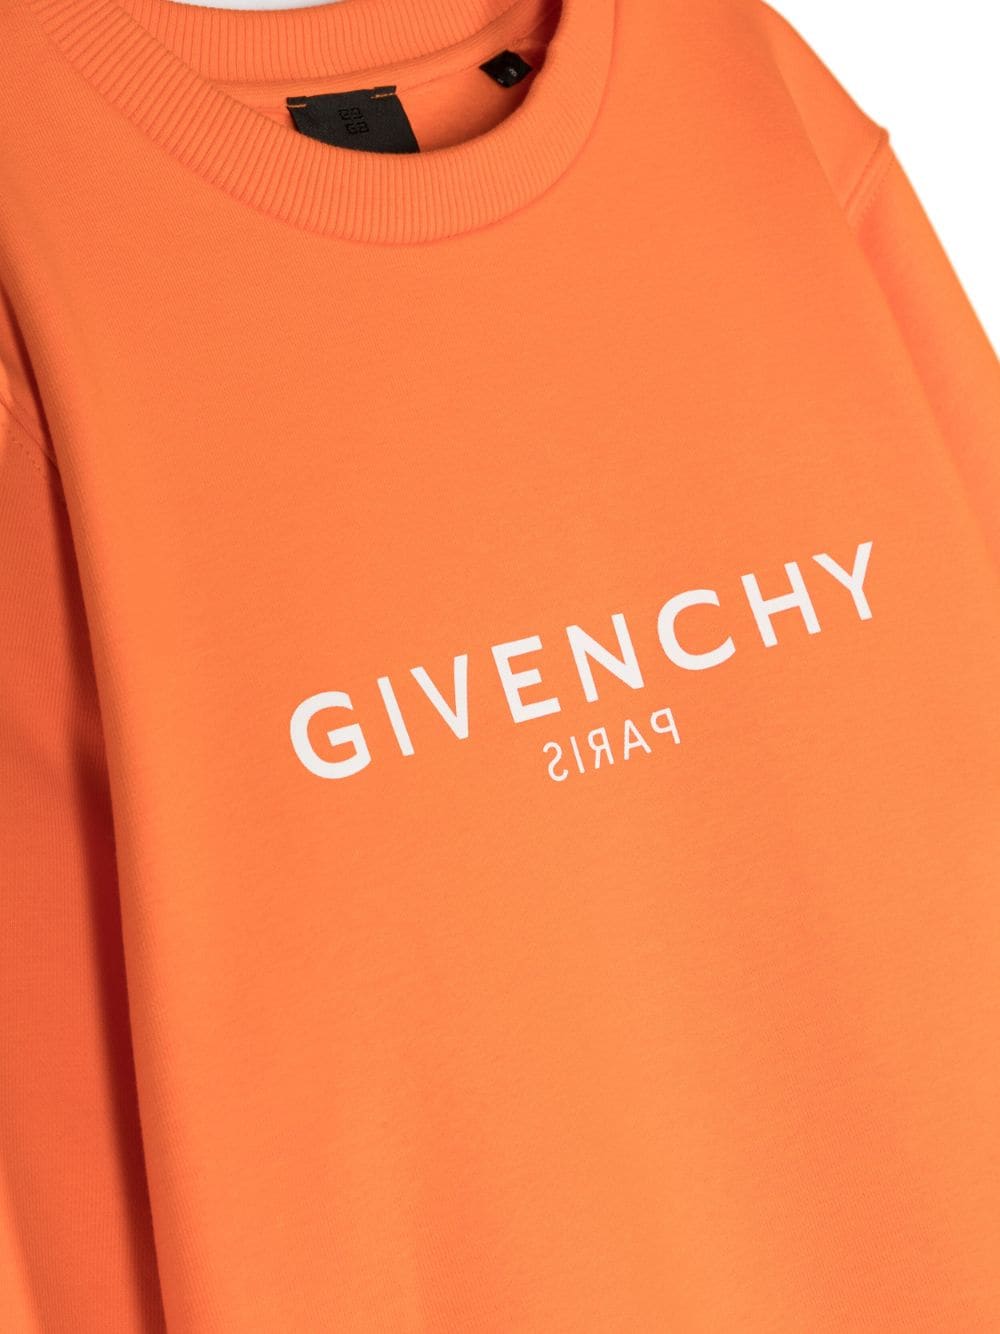 Orange sweatshirt for children with logo